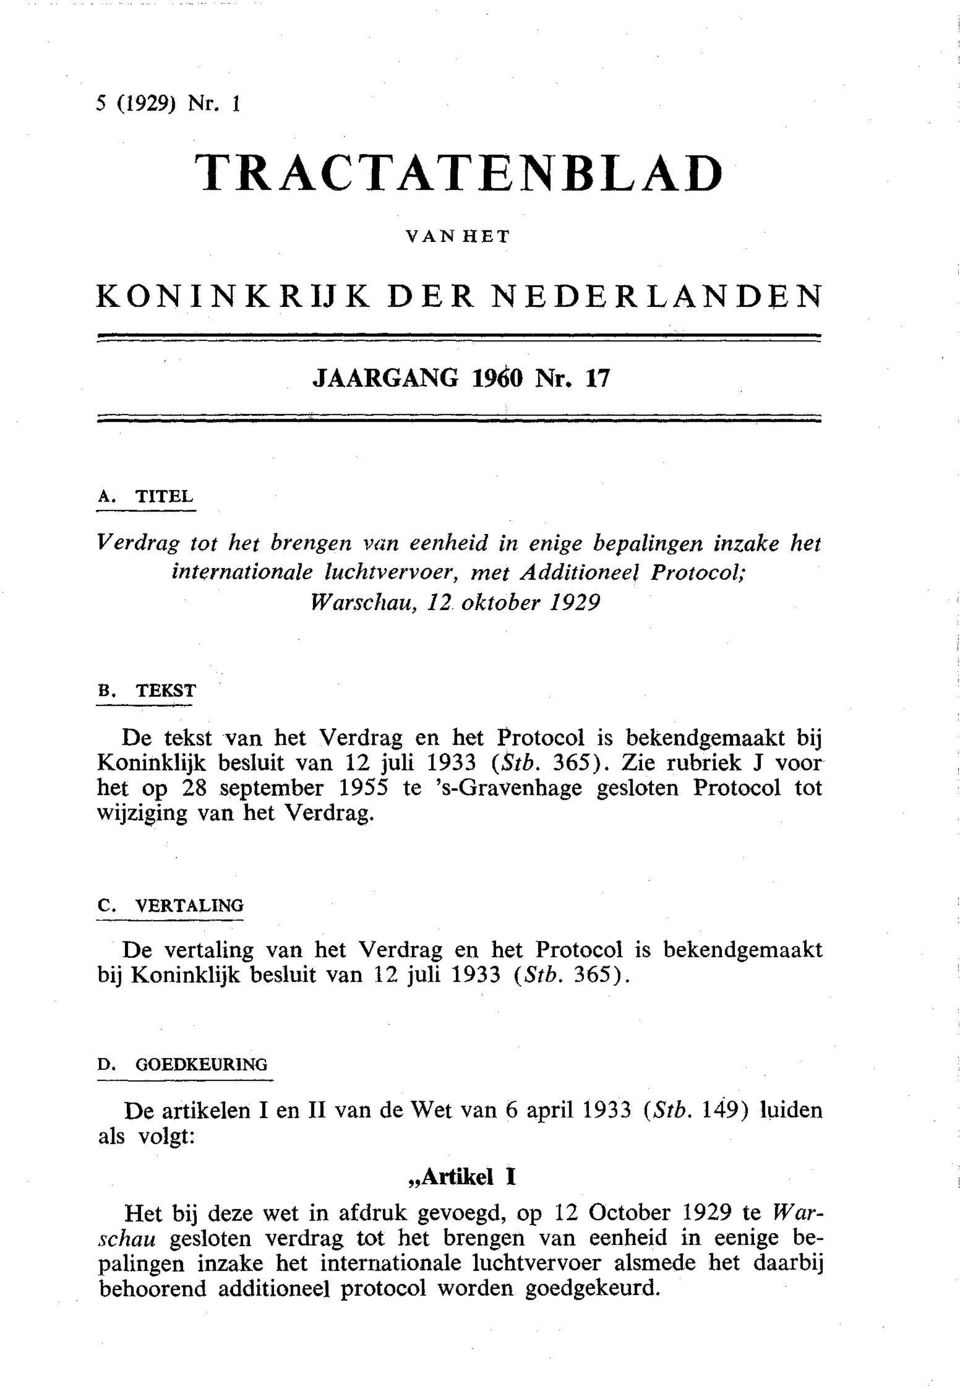 TEKST De tekst van het Verdrag en het Protocol is bekendgemaakt bij Koninklijk besluit van 12 juli 1933 (Stb. 365).